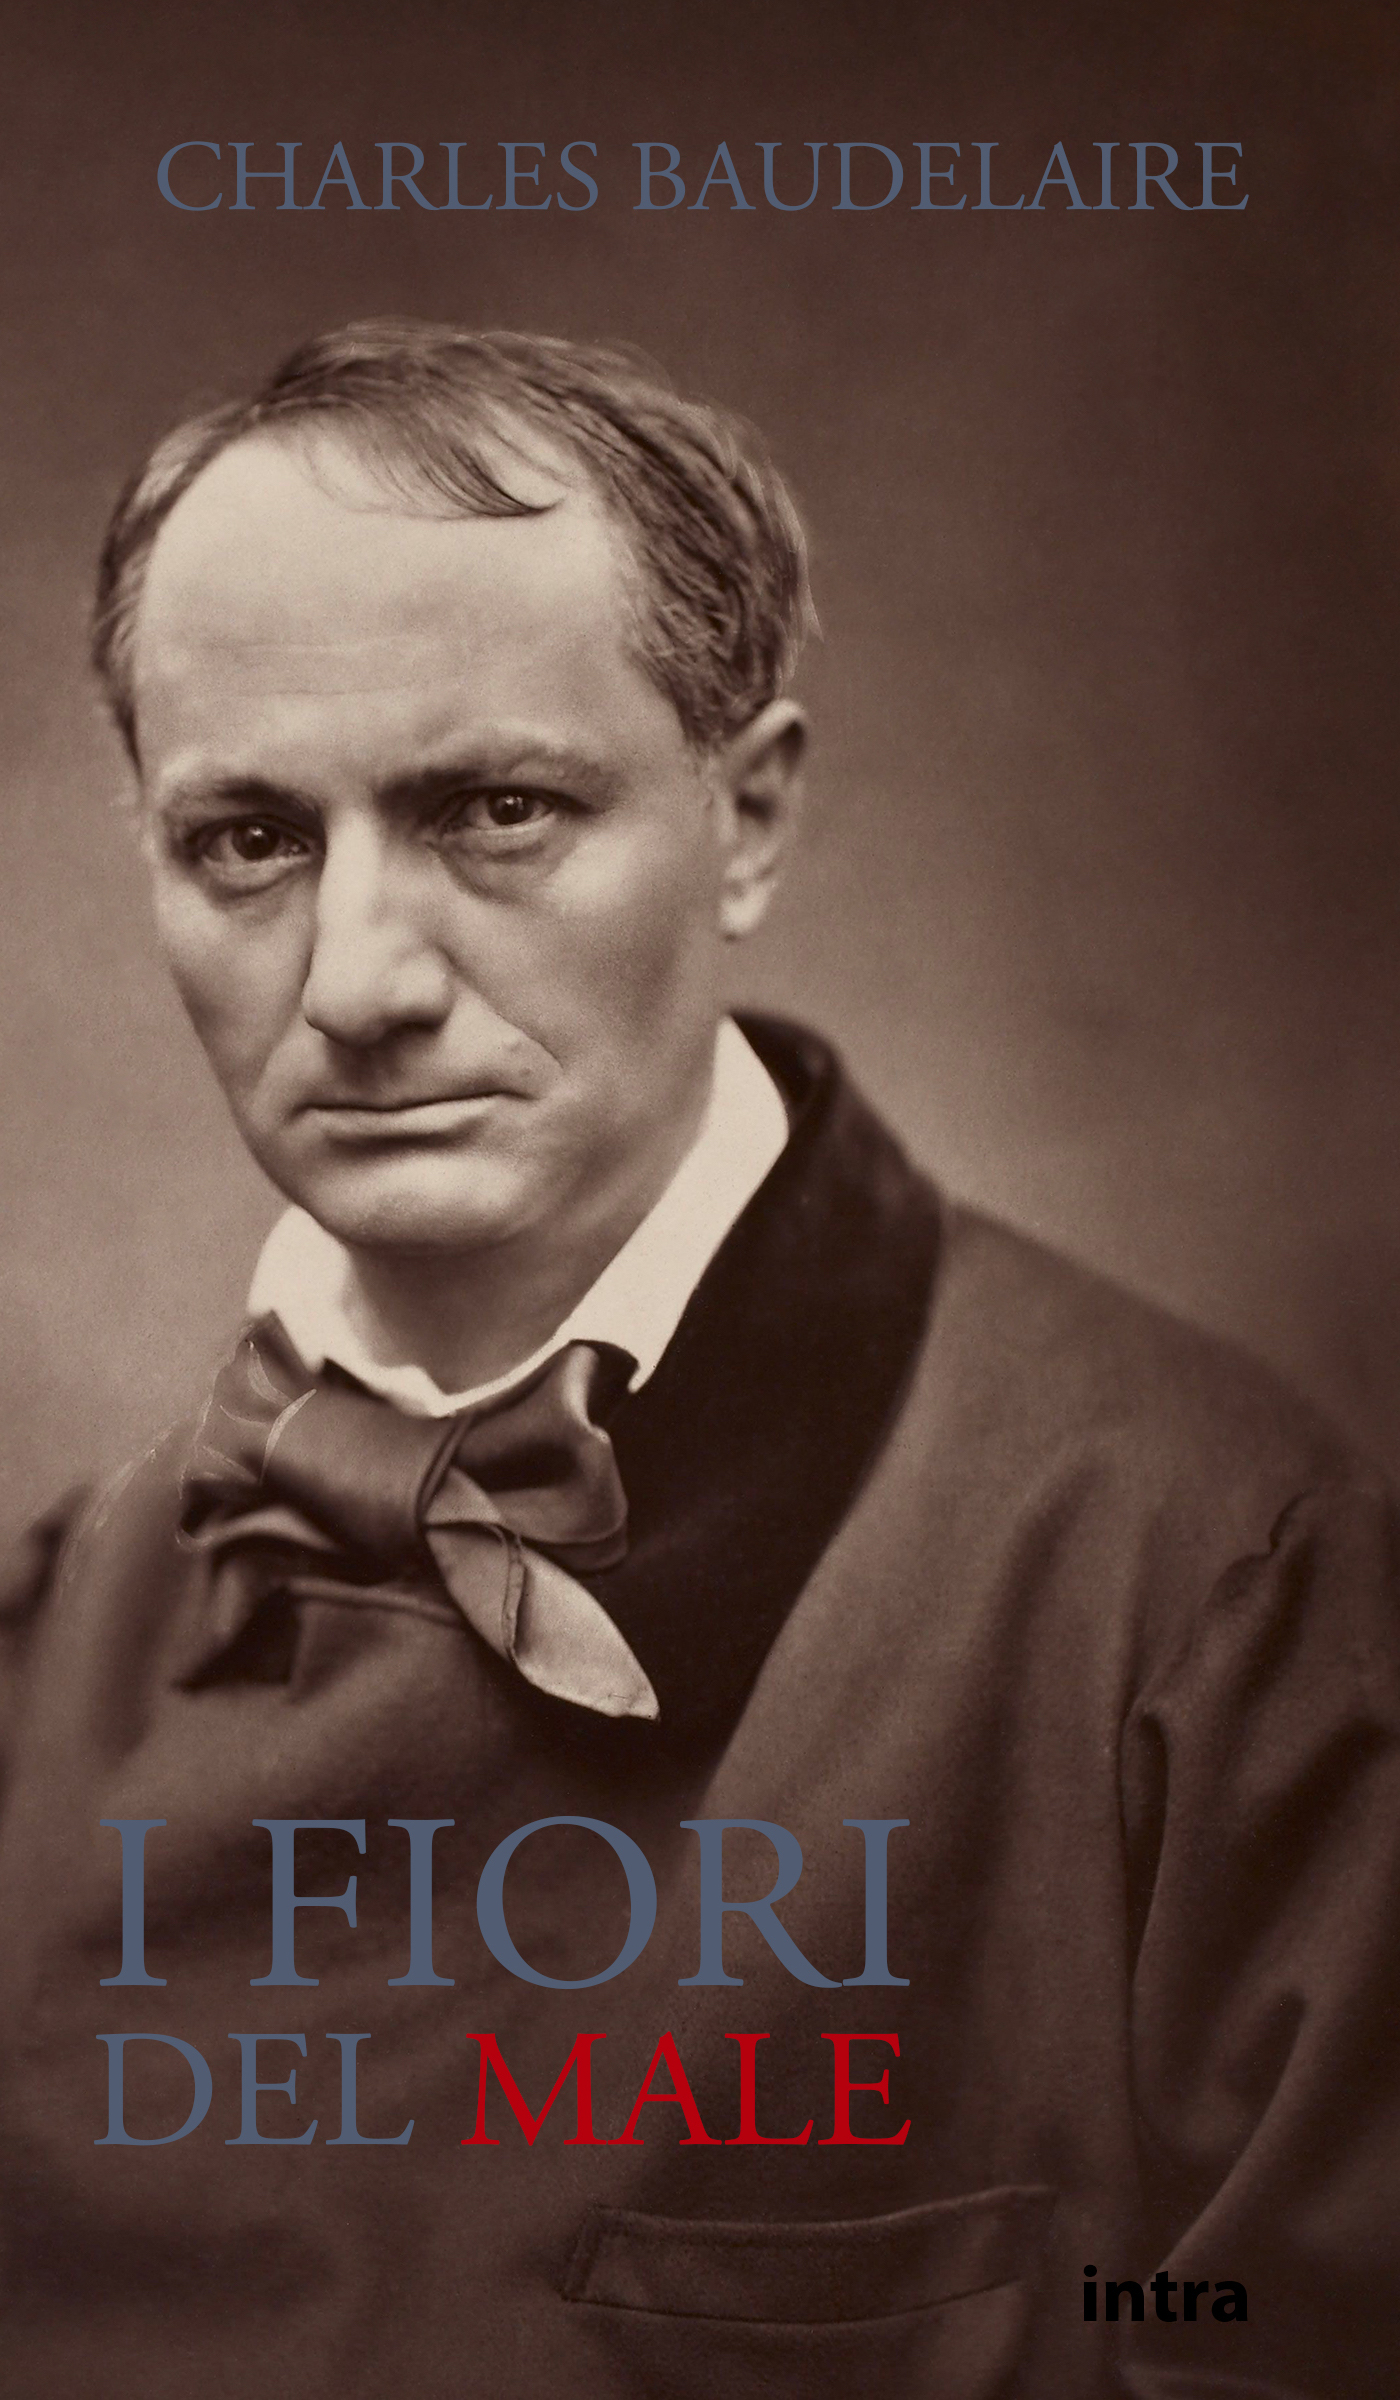 Charles Baudelaire, I fiori del male - Edizioni Intra